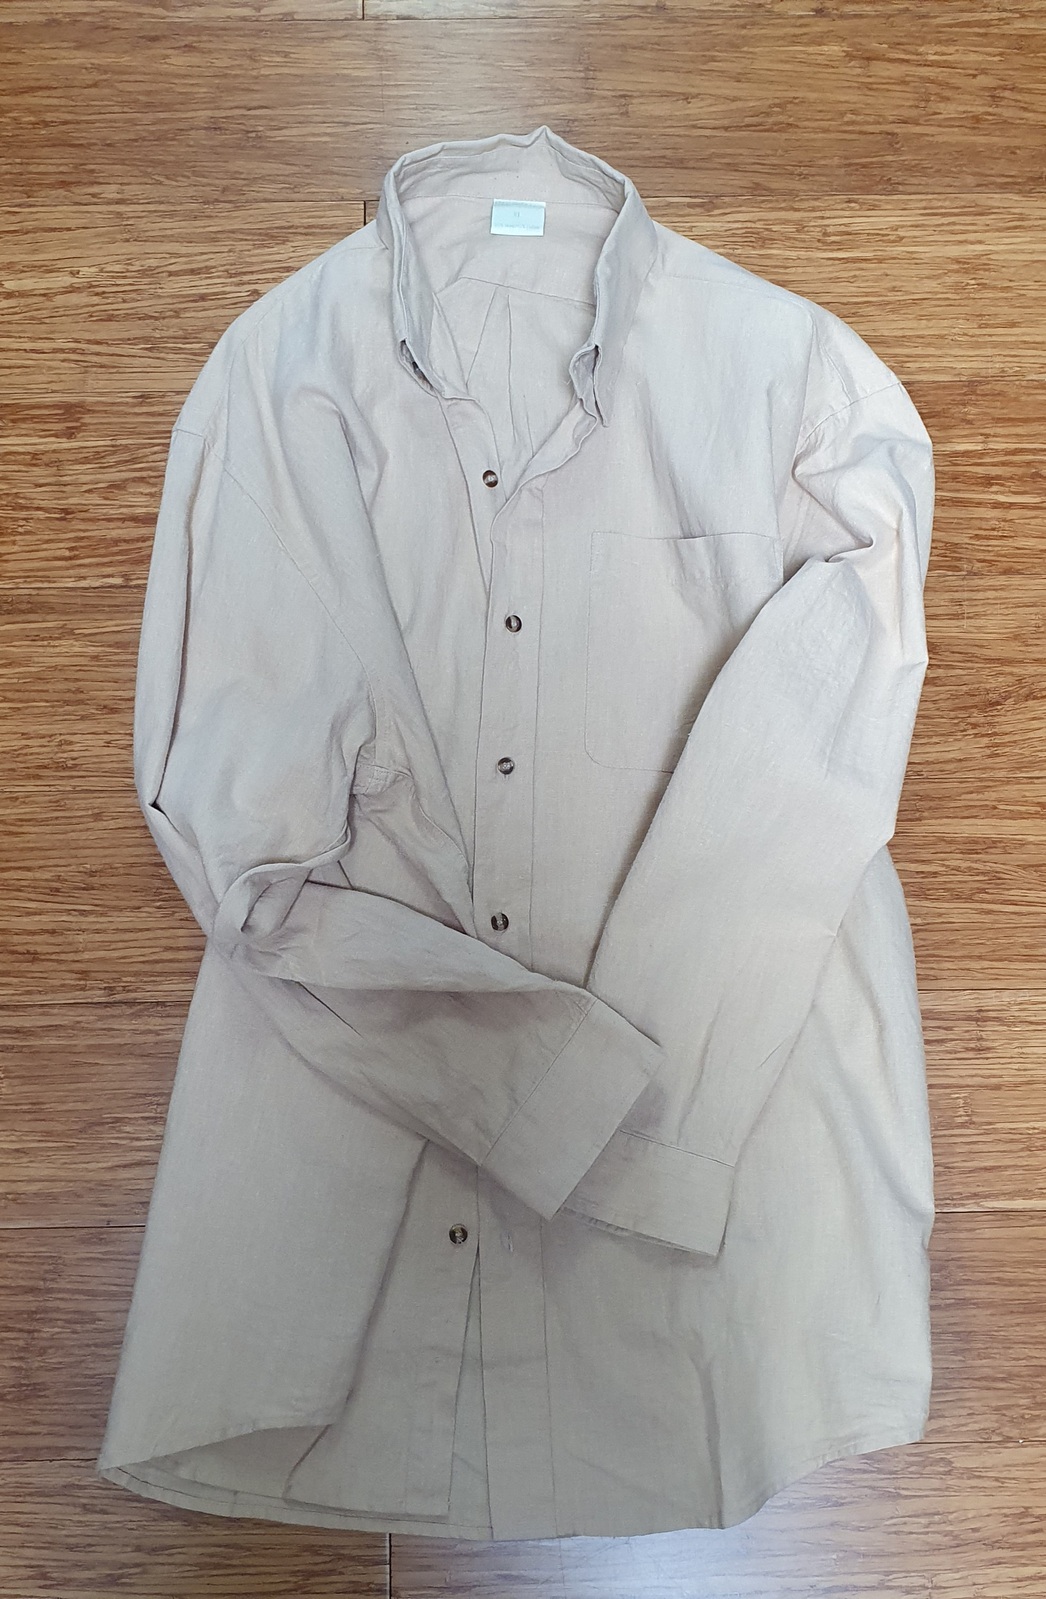 Men's Hemp Cotton Button Down Shirt - Long Sleeve